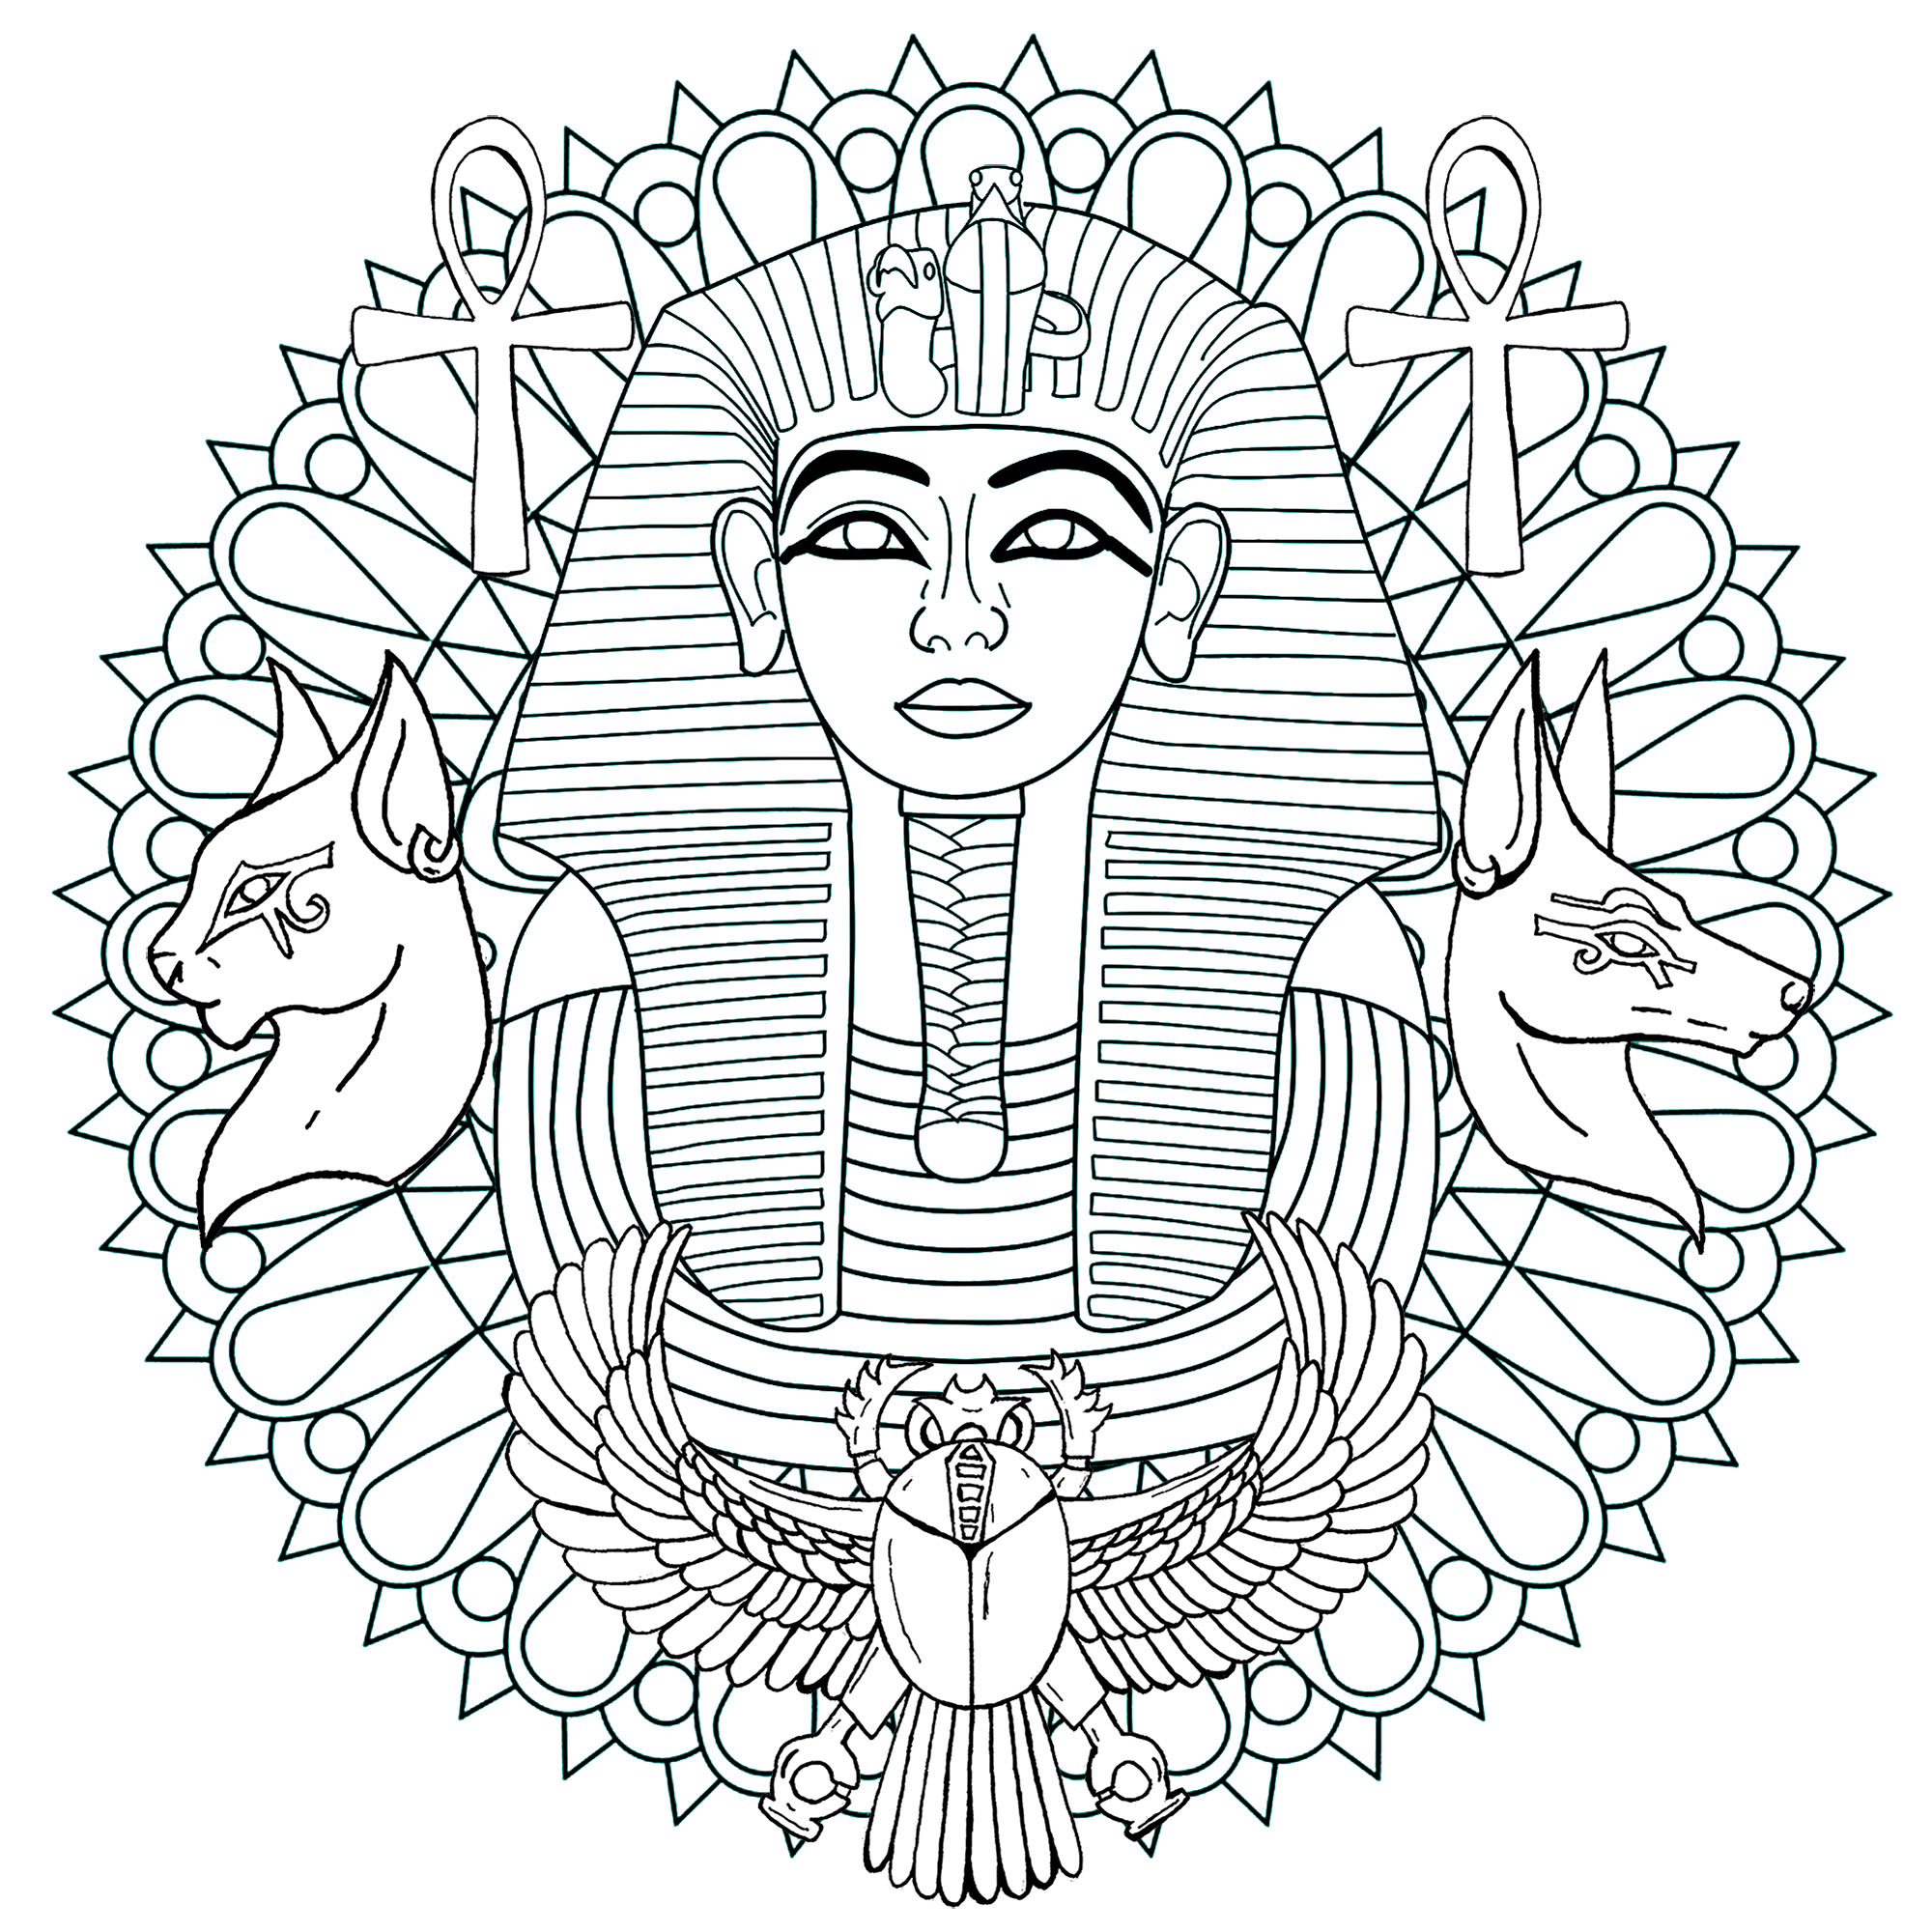 The tutankhamun mandala